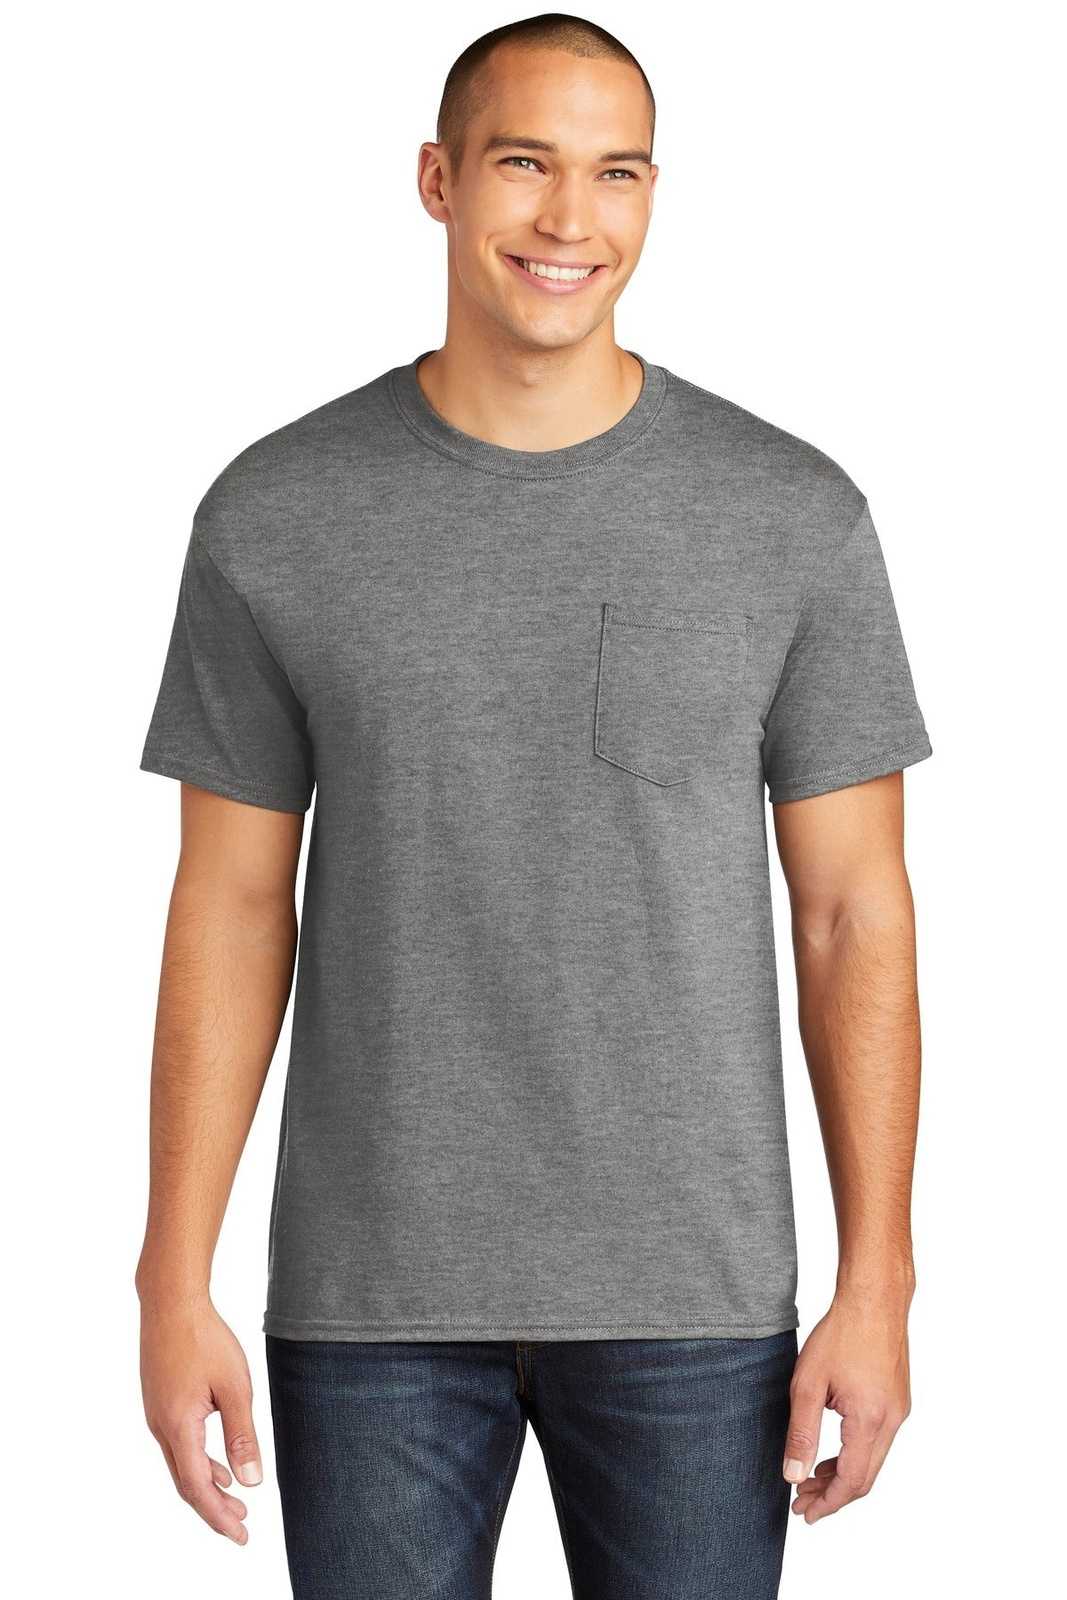 Gildan 5300 Heavy Cotton 100% Cotton Pocket T-Shirt - Graphite Heather - HIT a Double